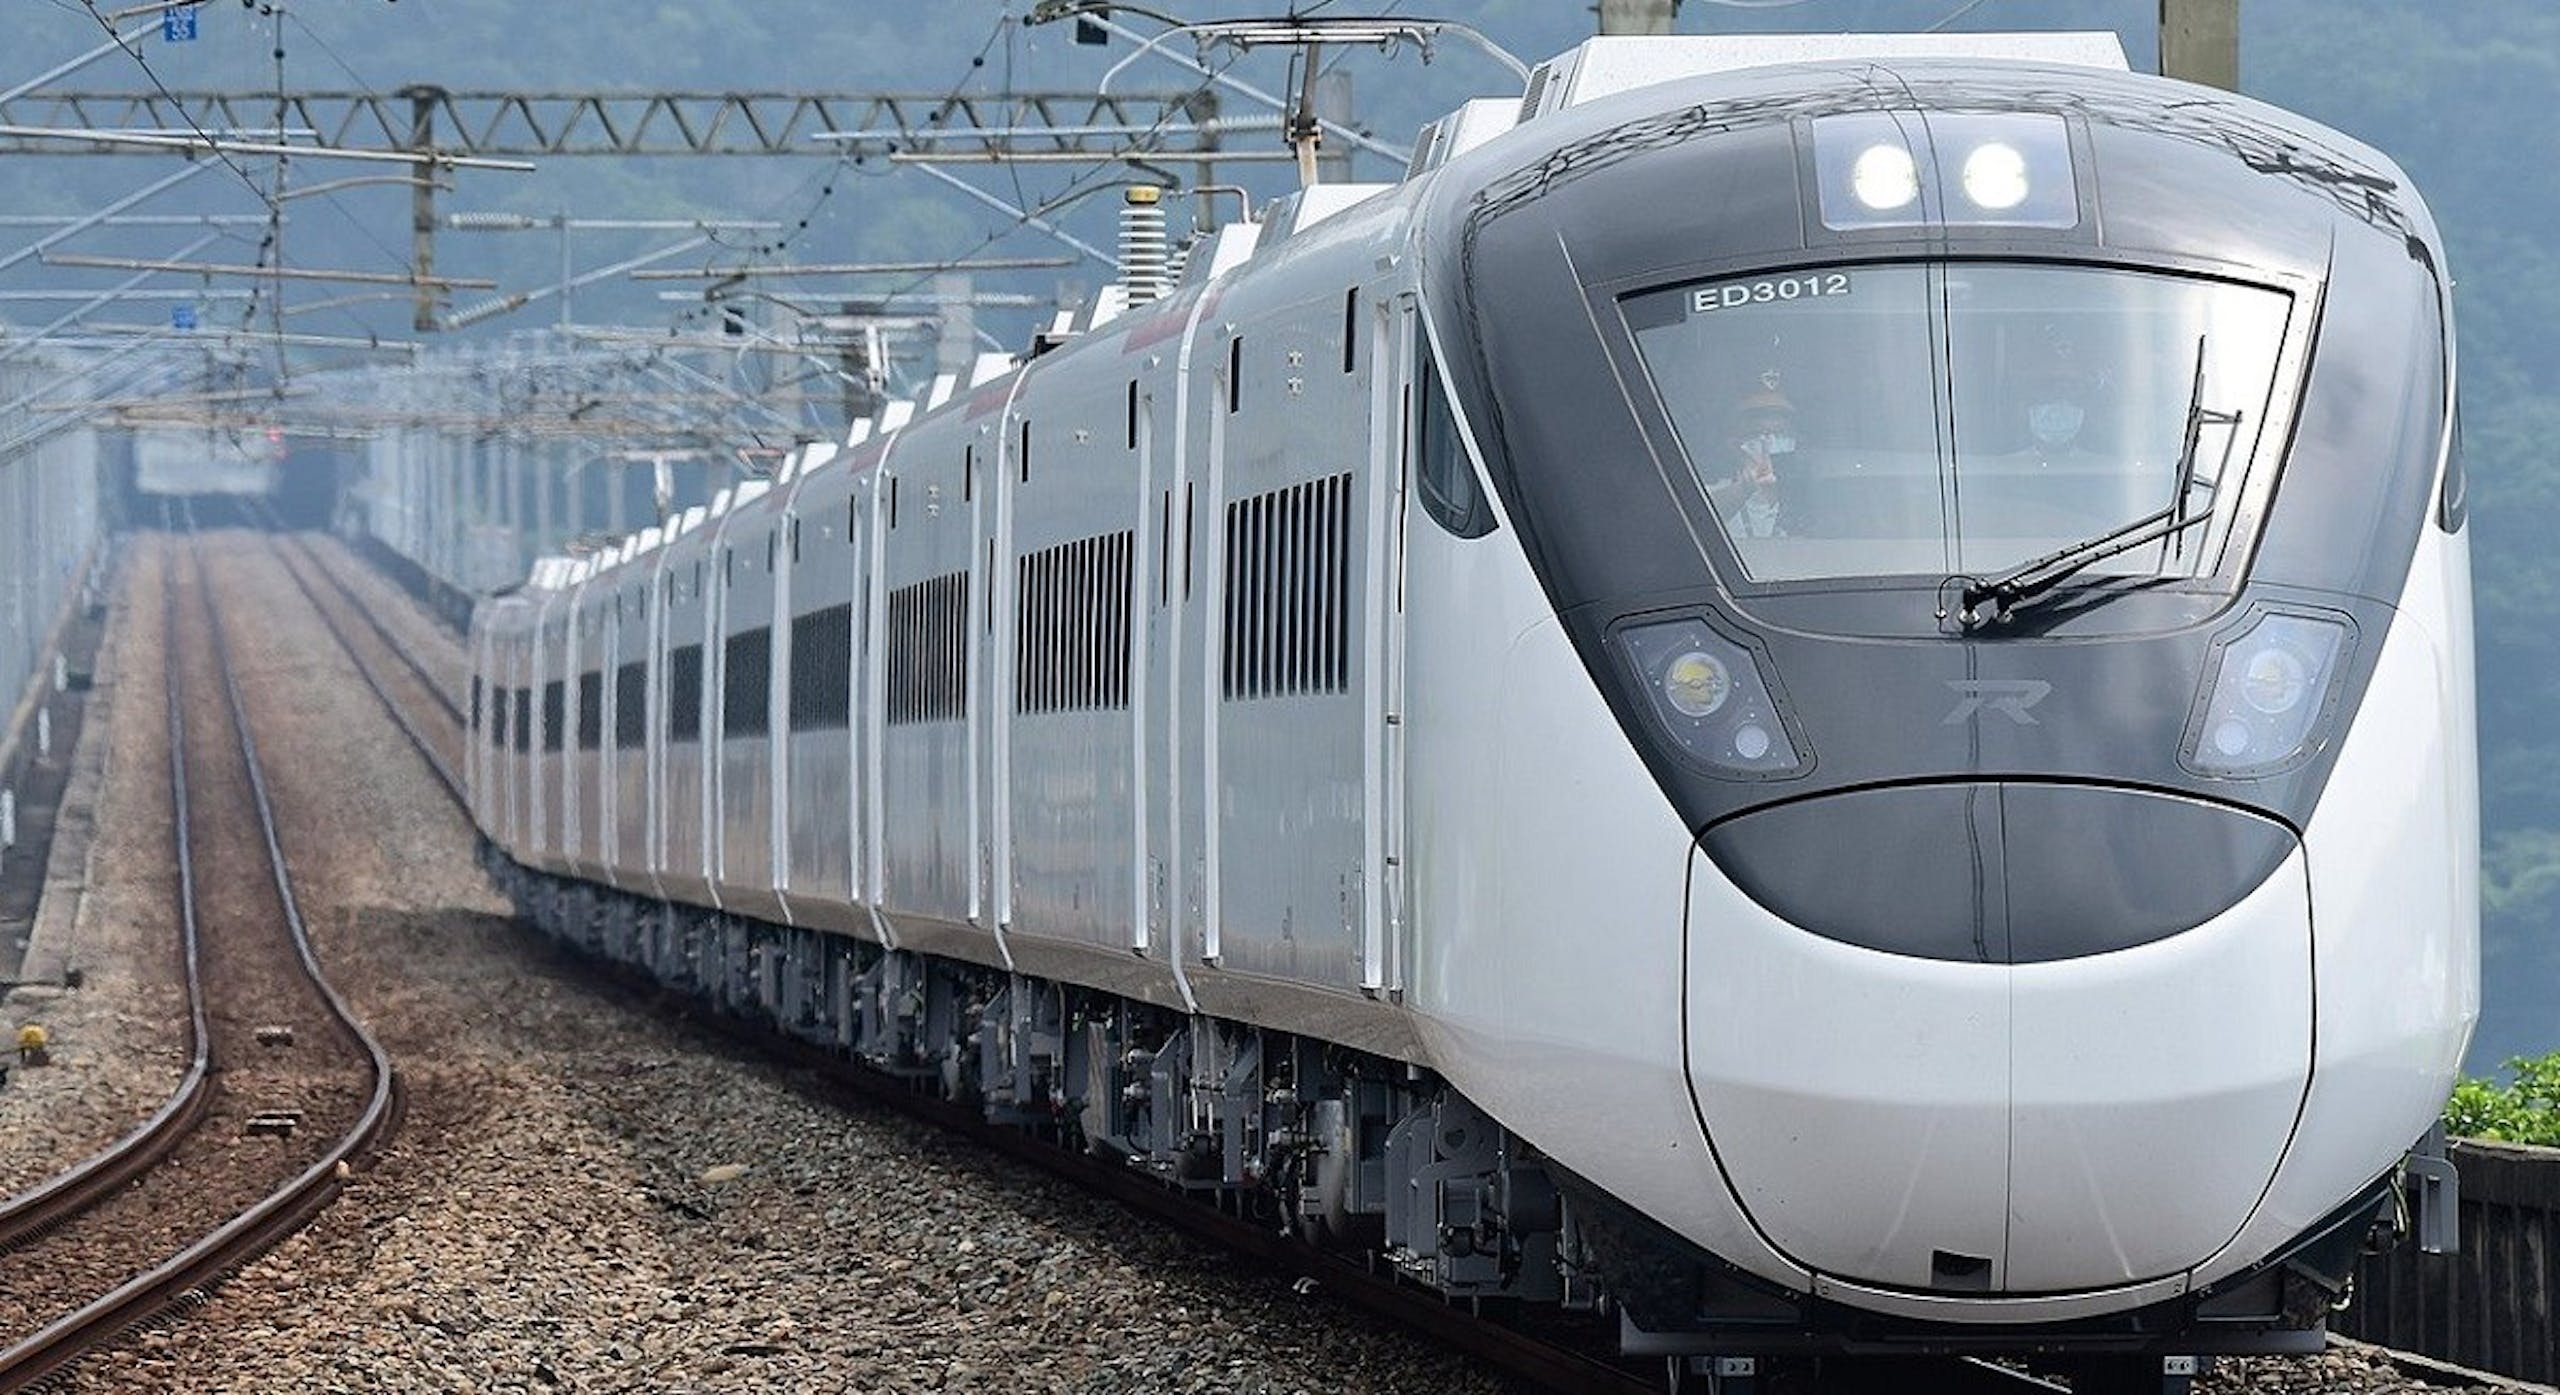 照片中提到了ED3012，包含了新自強 3000 騰雲 座艙 座位表、培養、鐵路交通、動車組3000系列、台灣鐵路管理局交通運輸部.